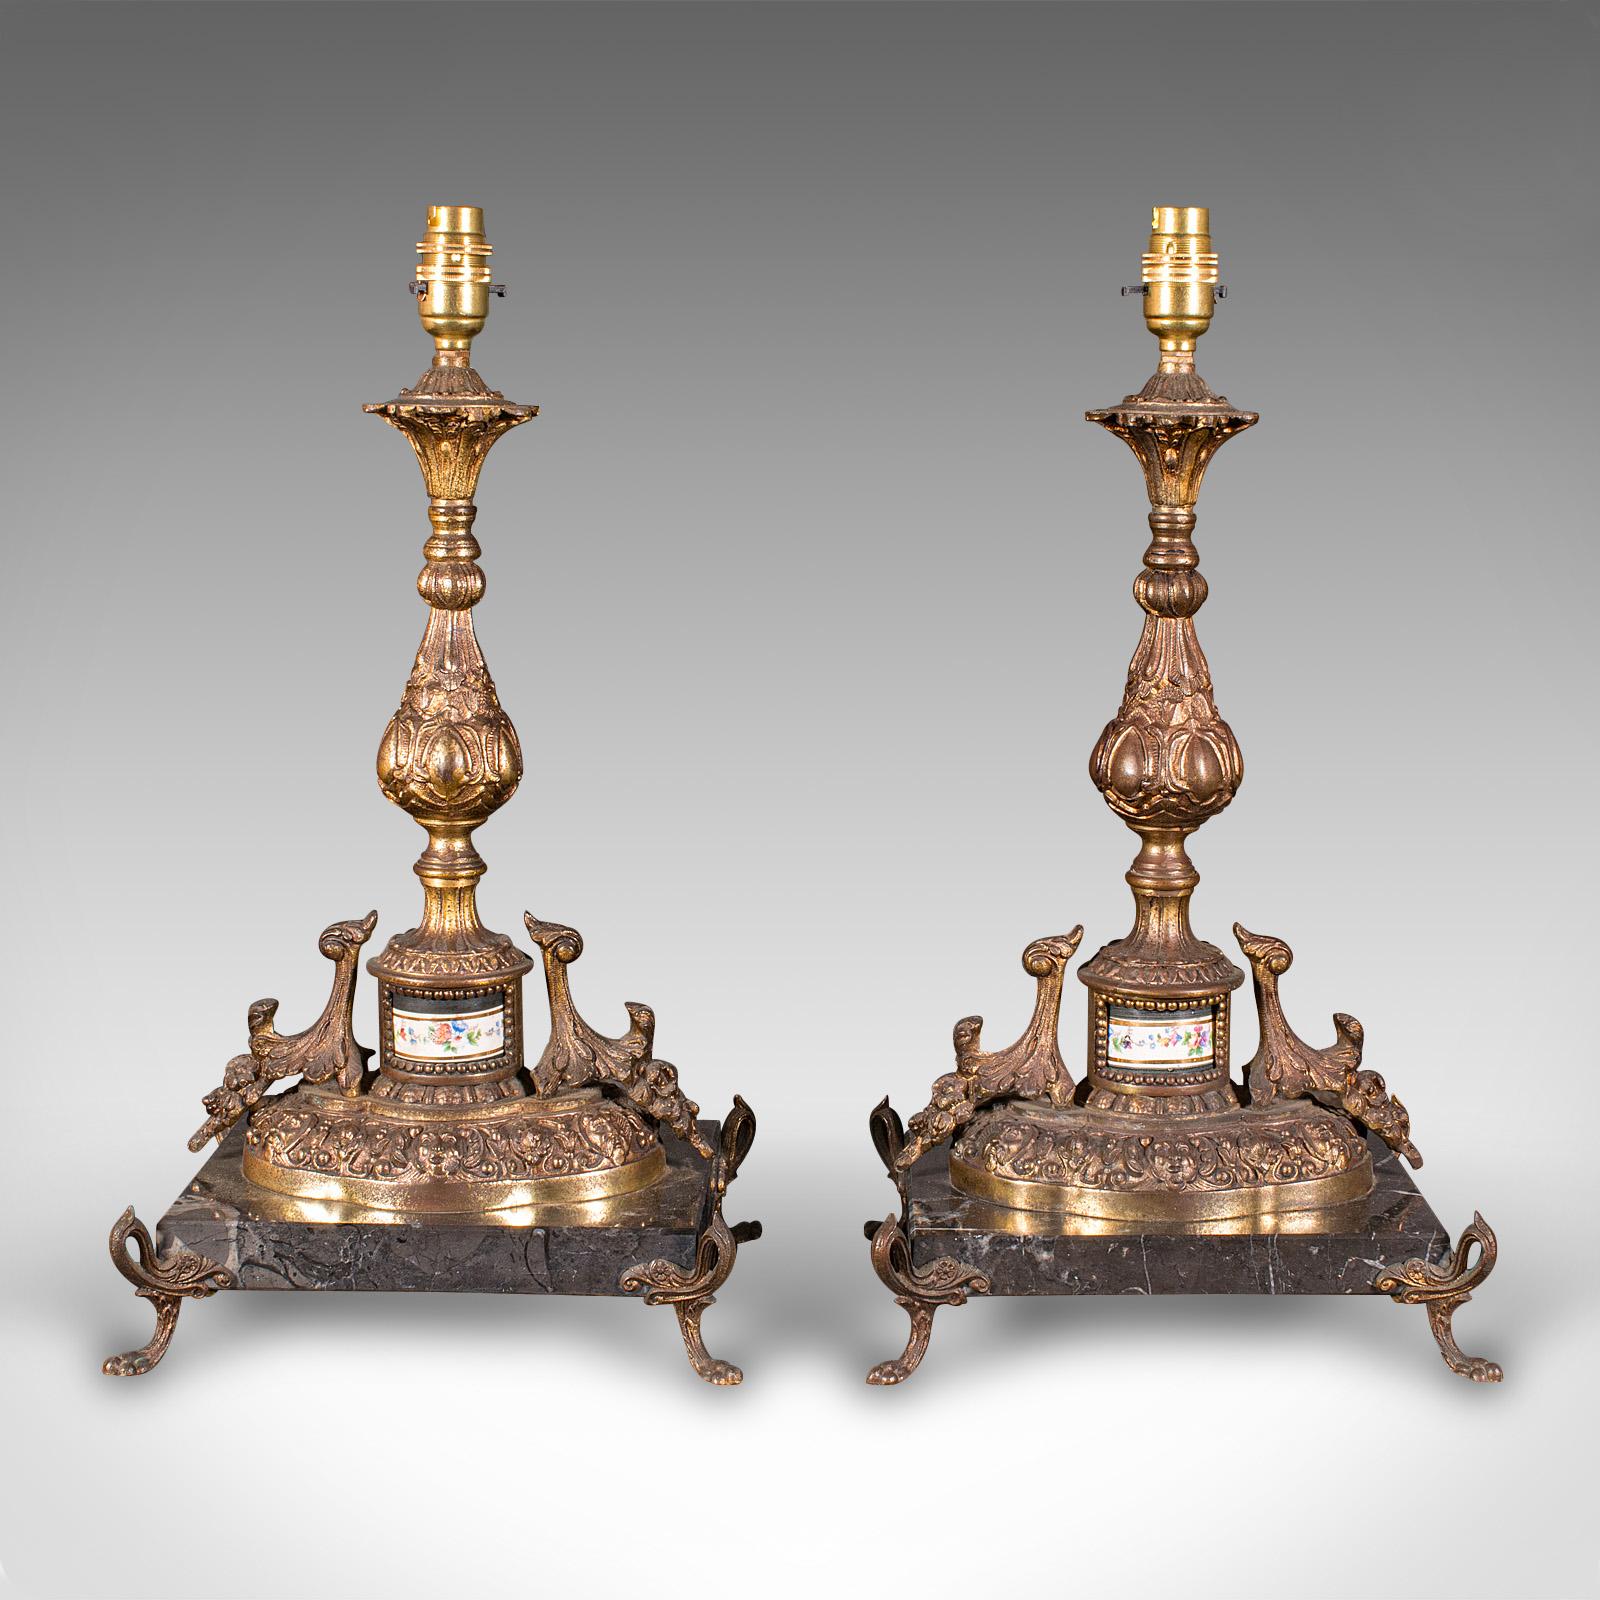 
Il s'agit d'une paire de pieds de lampe anciens. Lampe de table française en métal doré et marbre, datant de la période édouardienne, vers 1910.

Pieds de lampe délicieusement ornés et de proportions importantes
Présentant une patine d'ancienneté